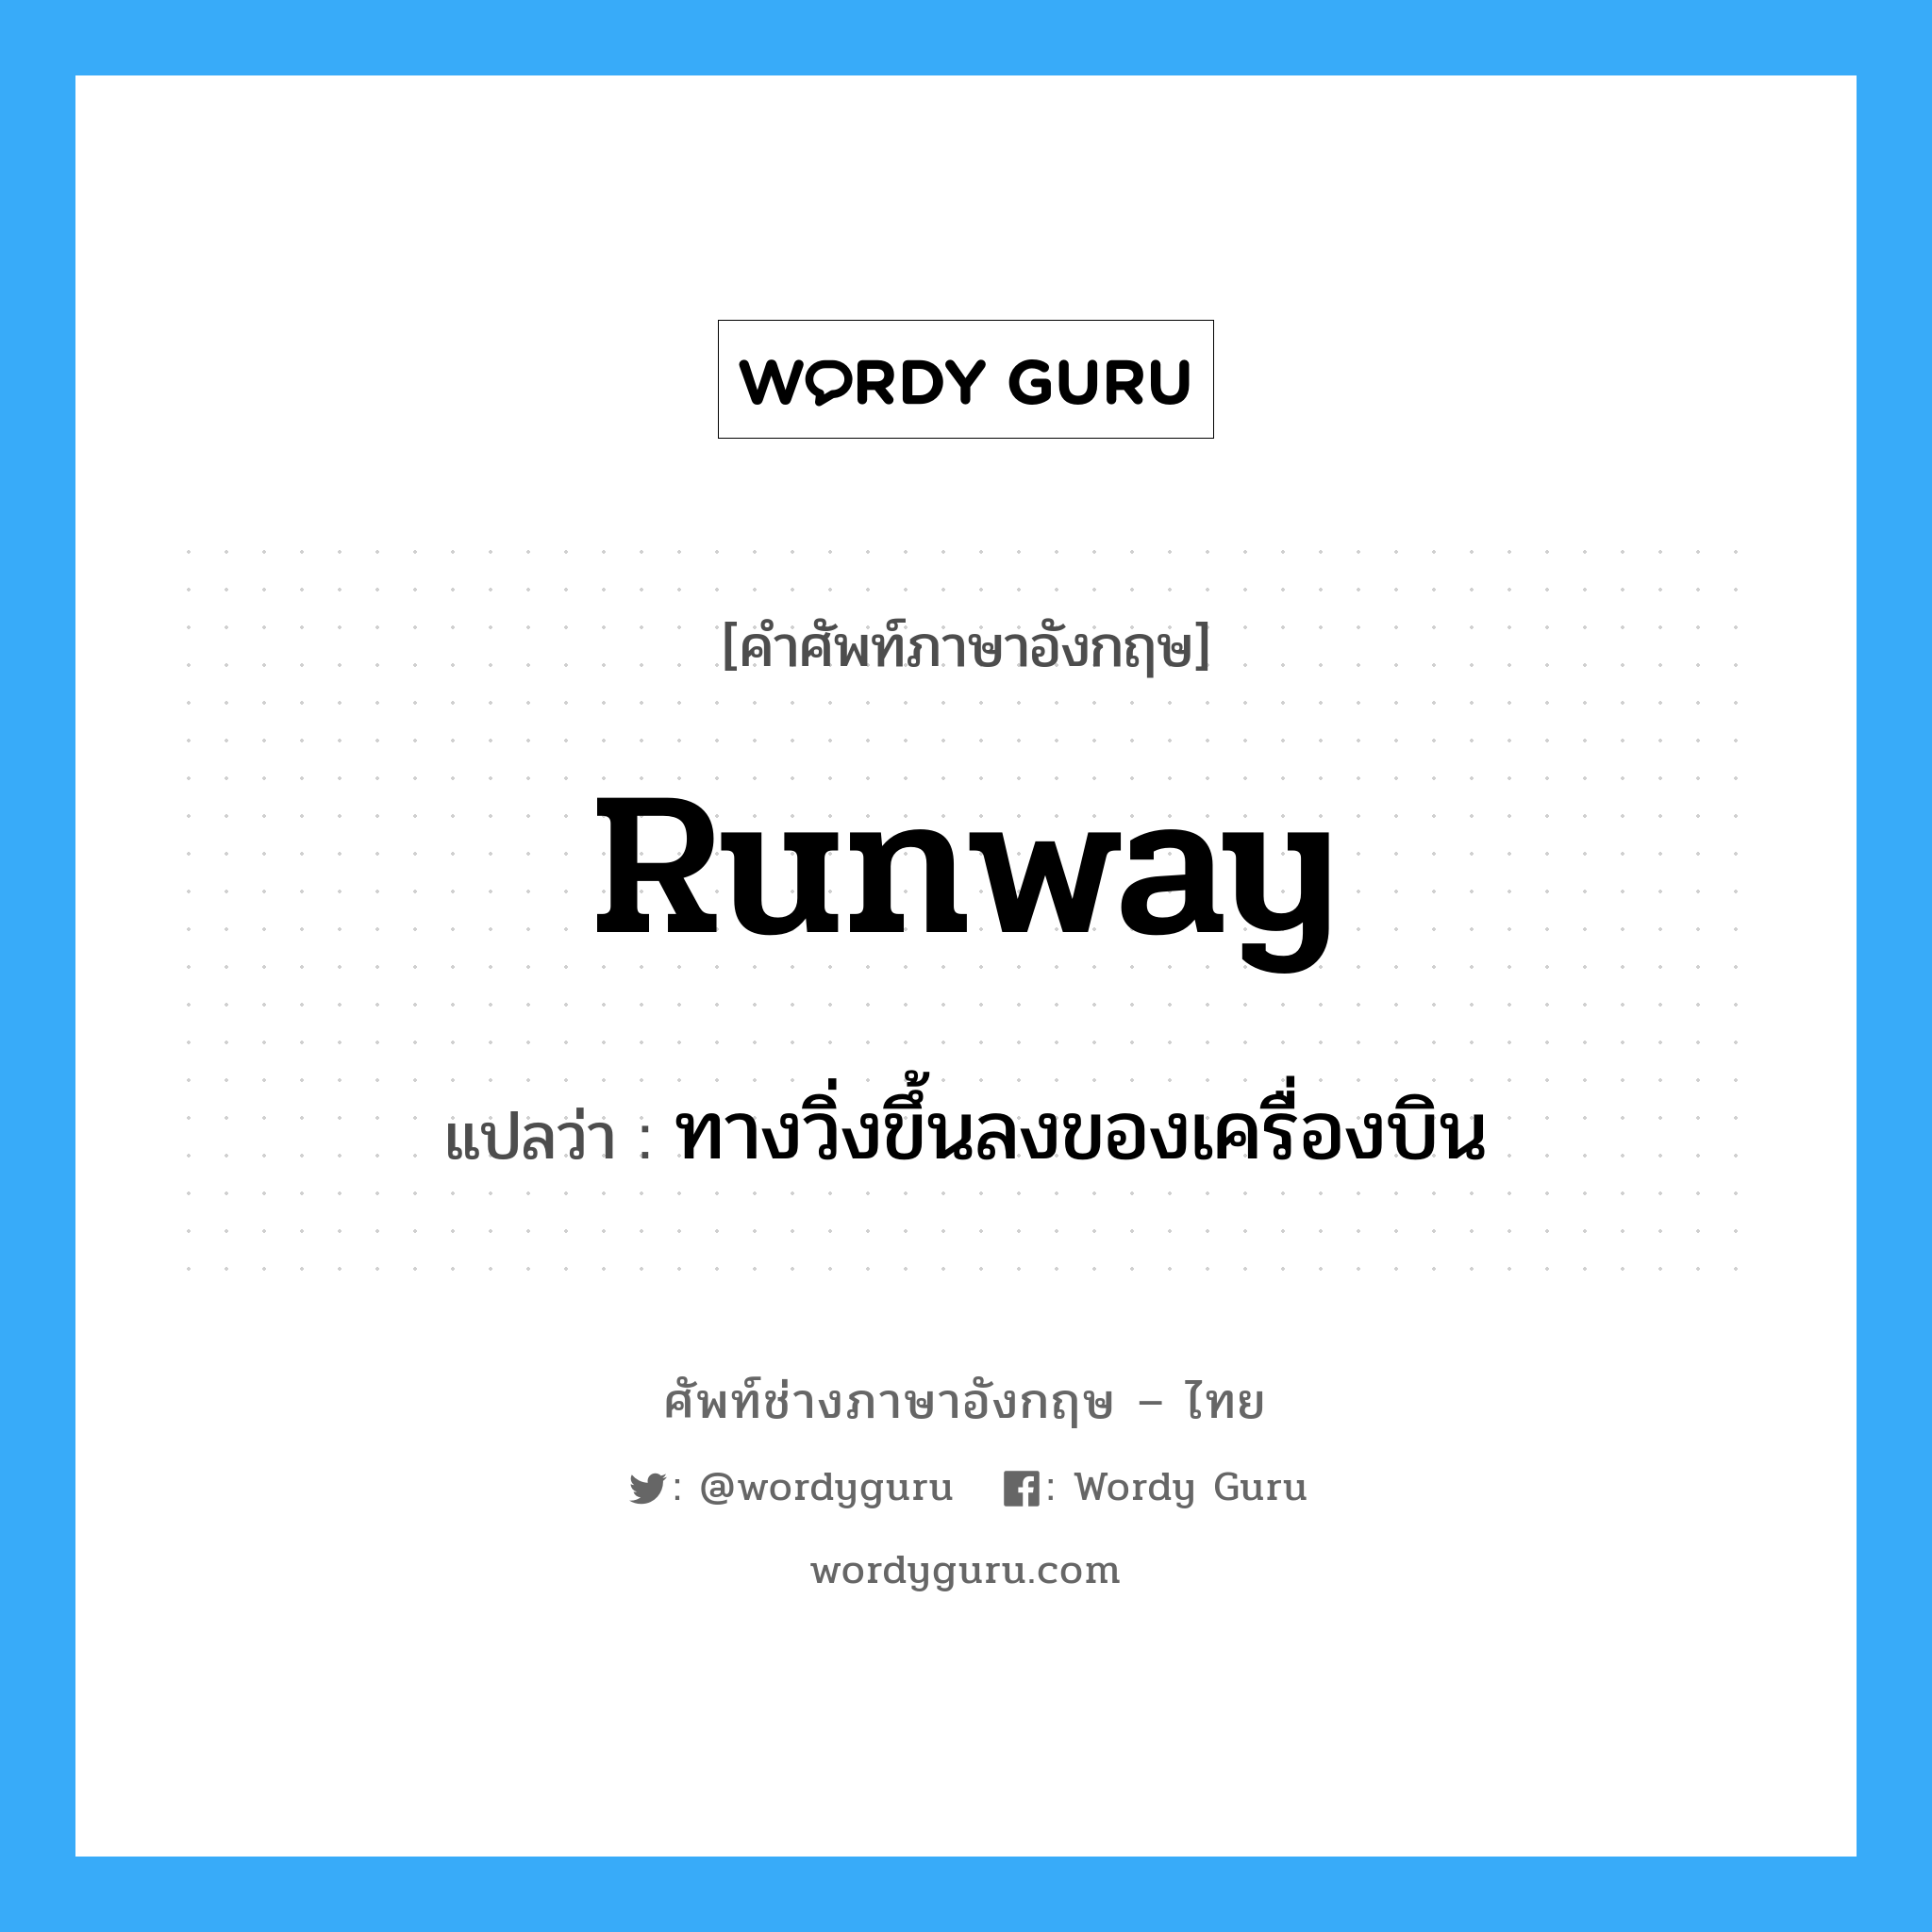 runway แปลว่า?, คำศัพท์ช่างภาษาอังกฤษ - ไทย runway คำศัพท์ภาษาอังกฤษ runway แปลว่า ทางวิ่งขึ้นลงของเครื่องบิน